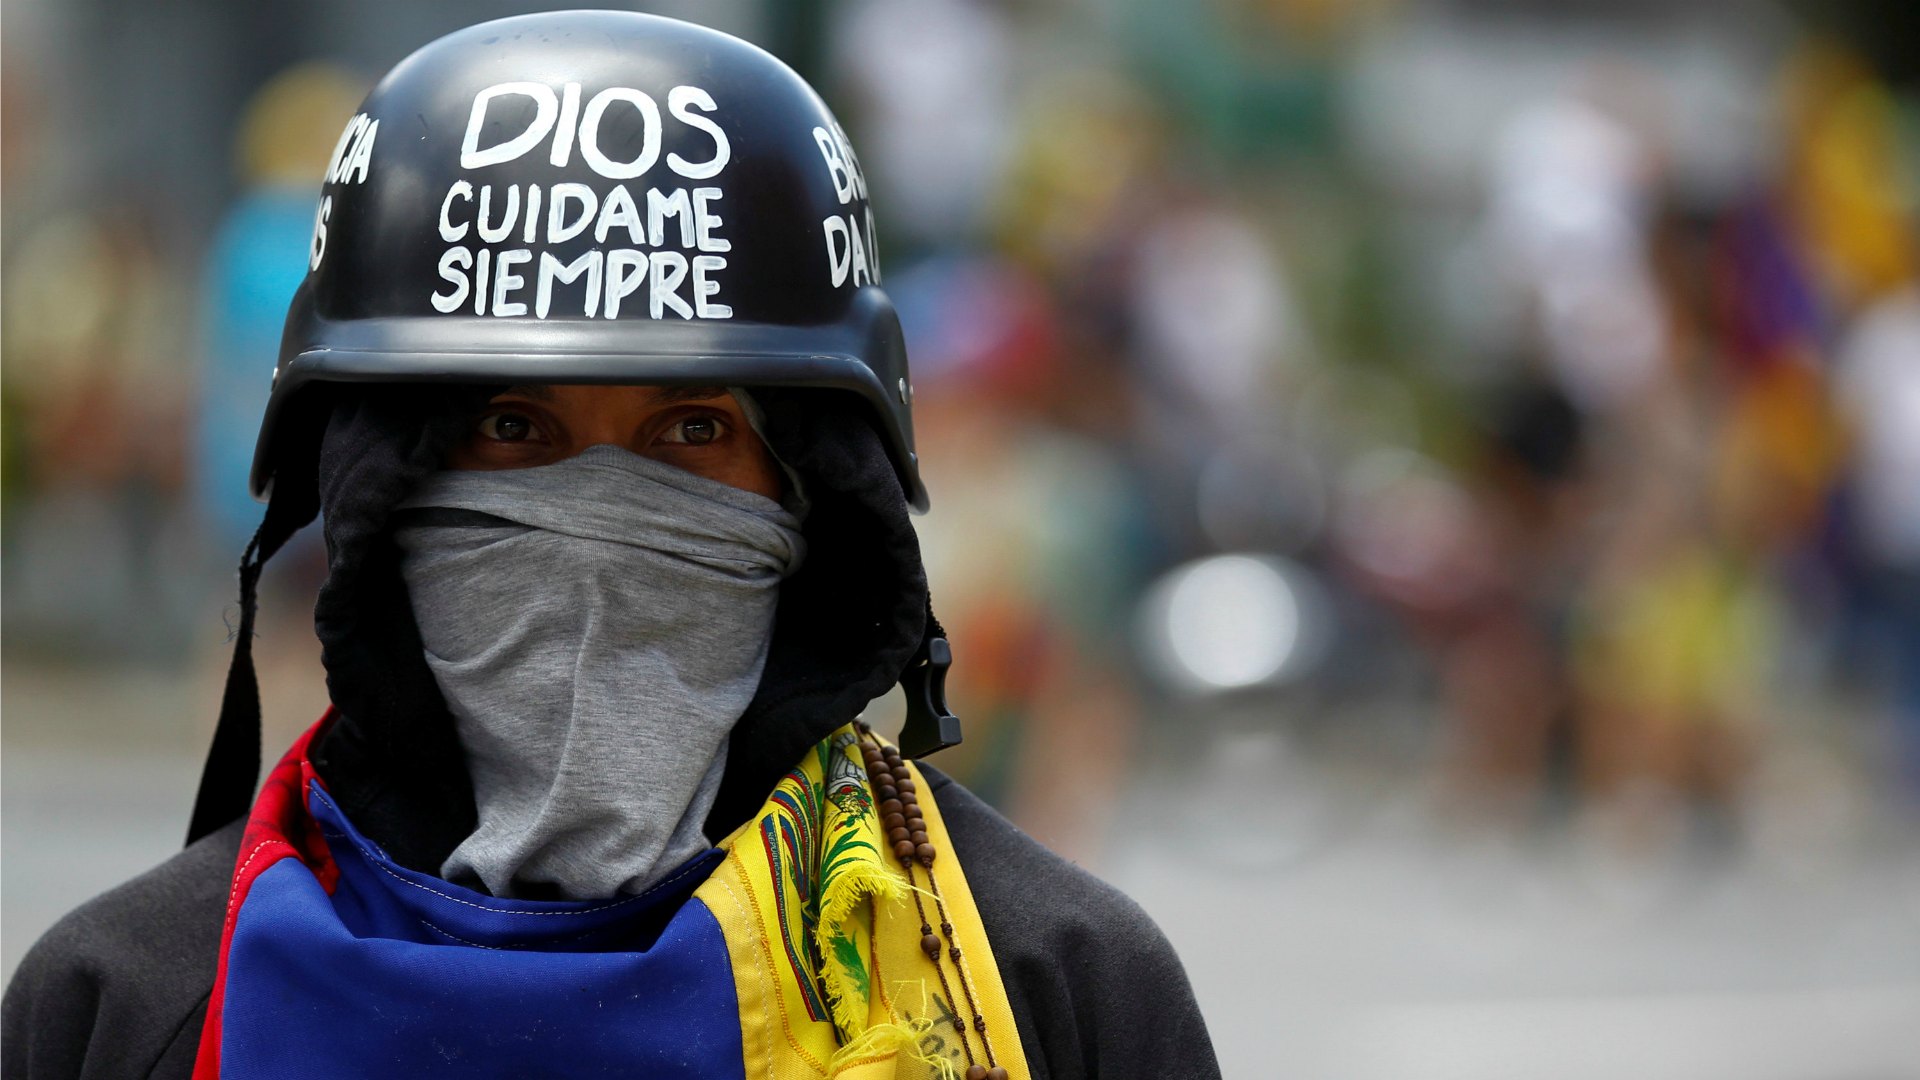 El papa Francisco reclama el fin de la violencia en Venezuela